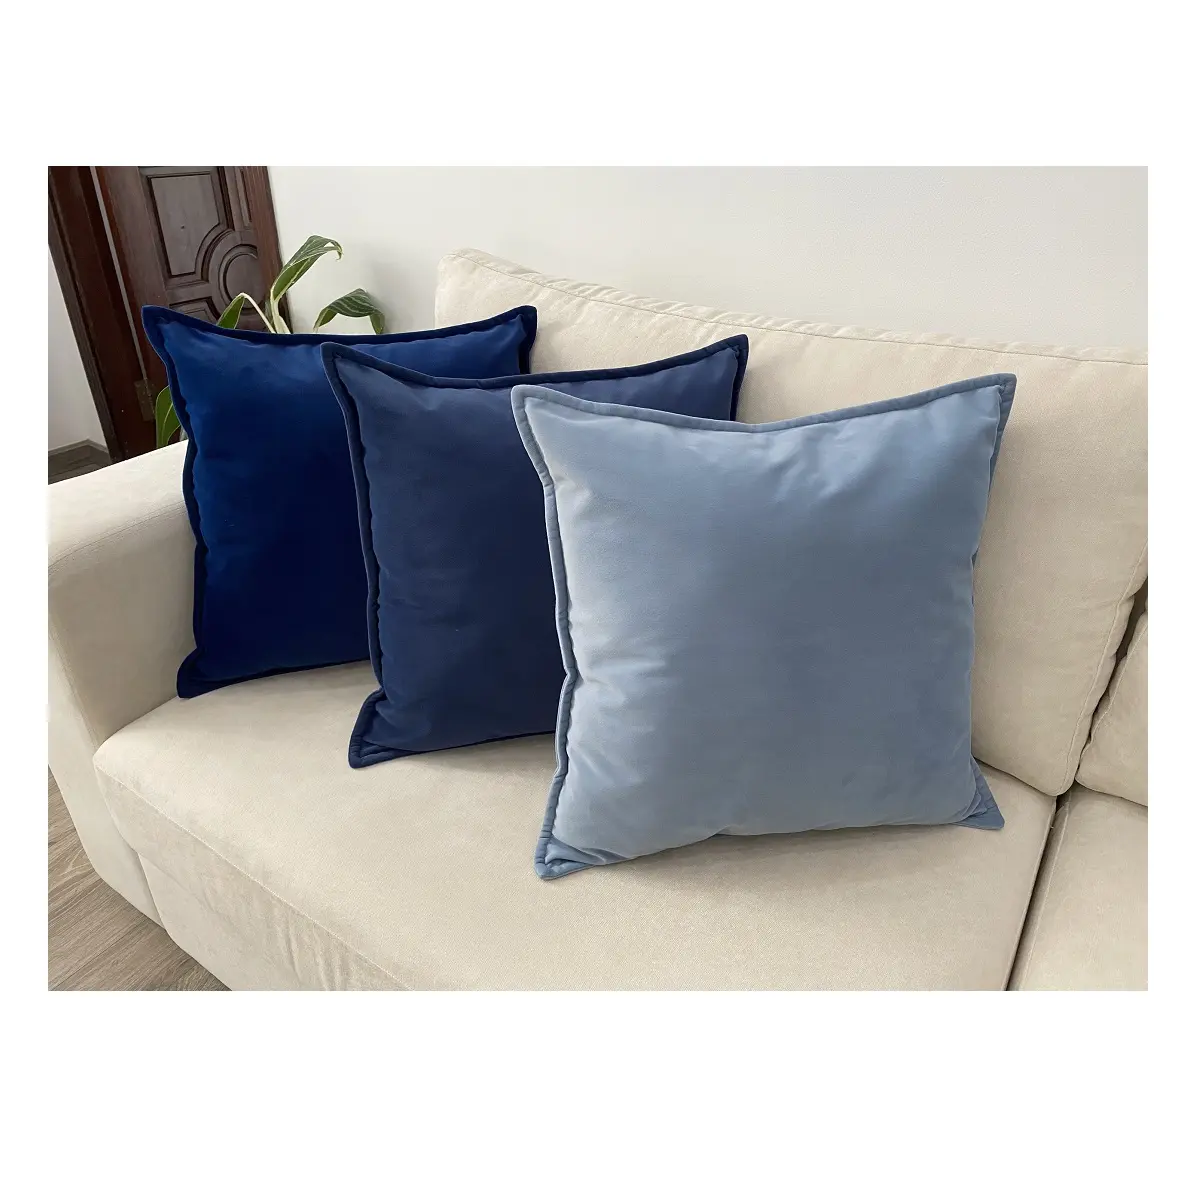 Cuscini decorativi di lusso per personalizzare materiale in poliestere/lino/cotone stile moderno Non tossico cuscini